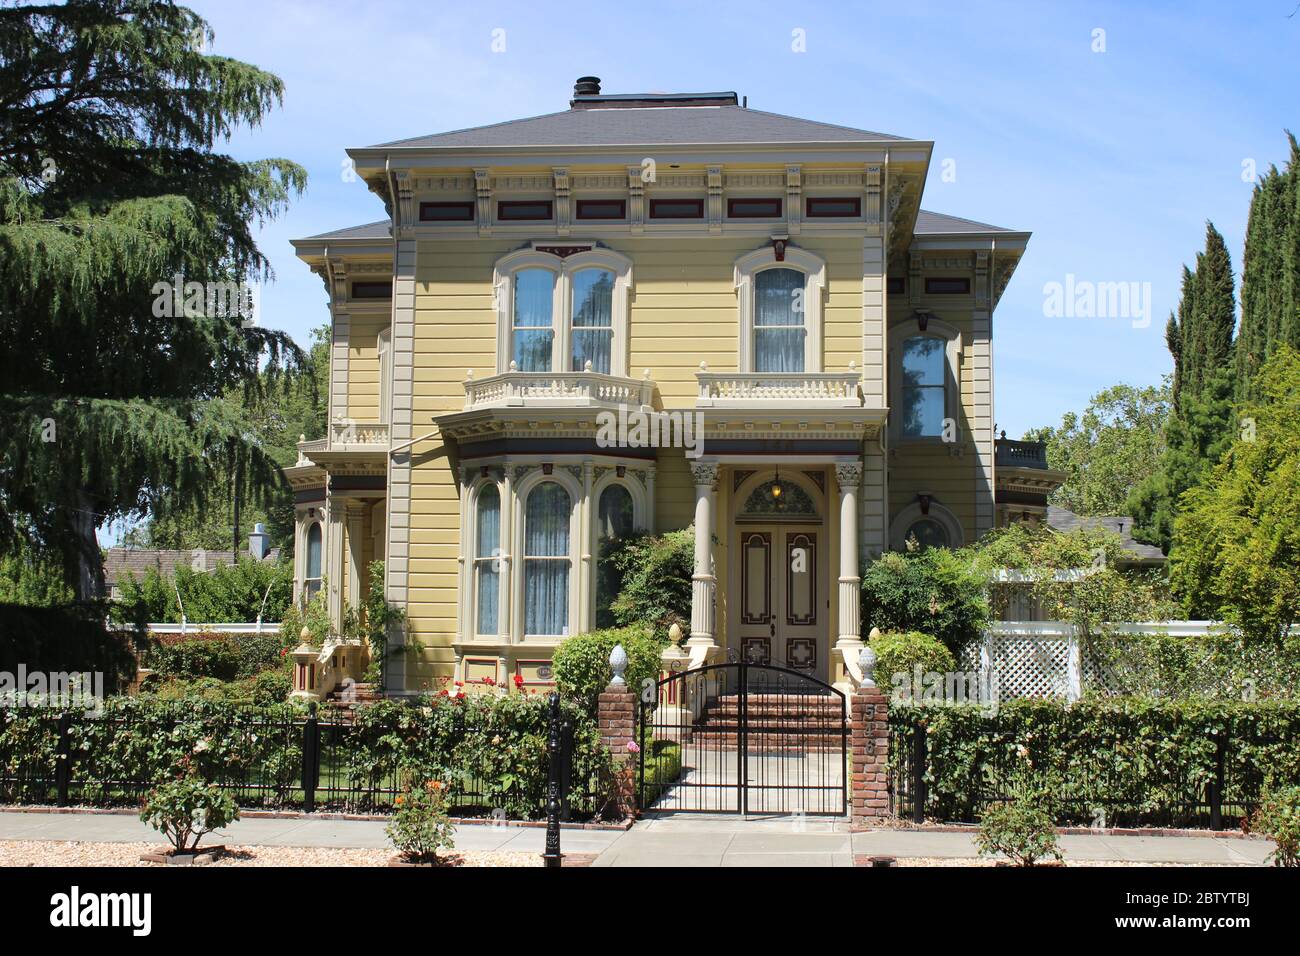 Italianate House built ca. 1875, Woodland, California Stock Photo